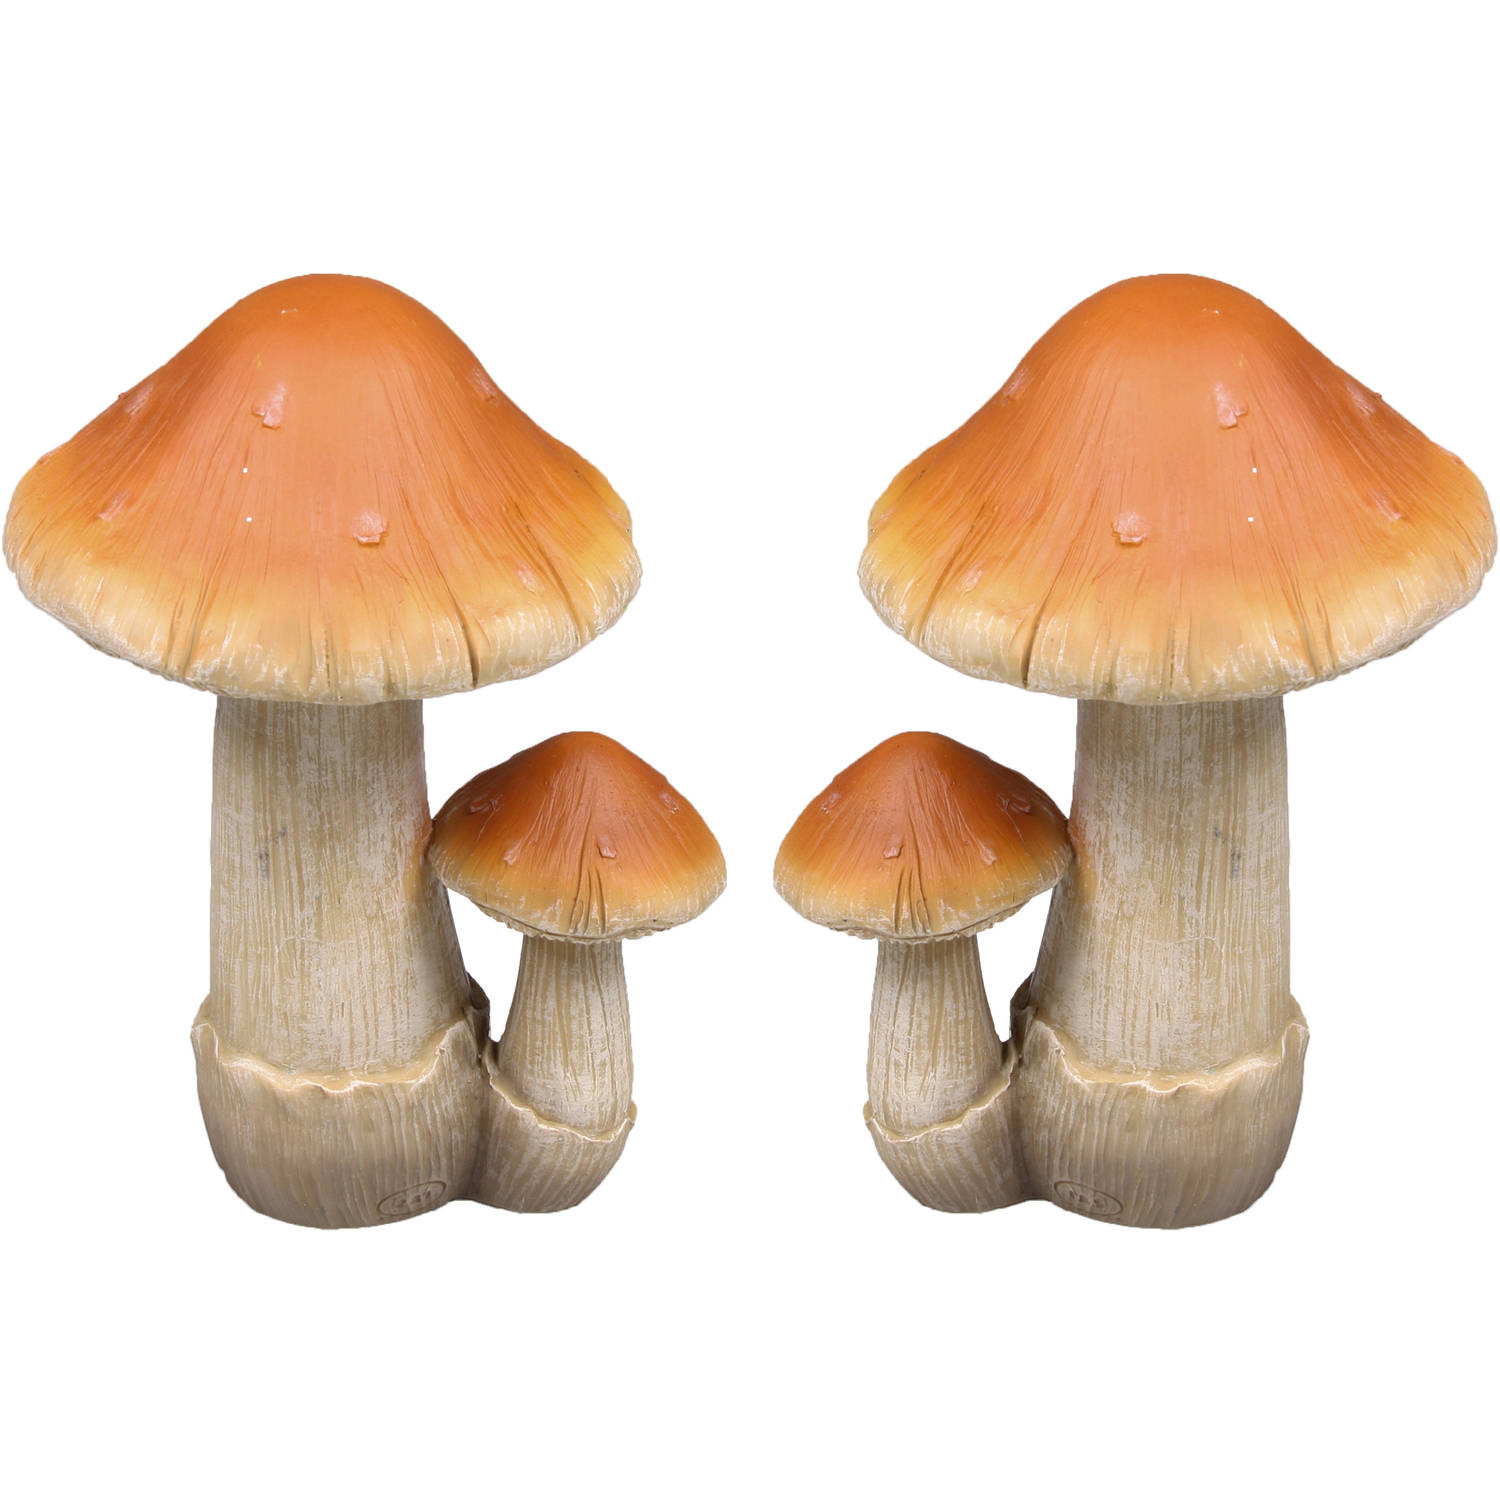 Decoratie huis/tuin beeldje paddenstoel - 2x - boleet - bruin/wit - 8 x 13 cm - Tuinbeelden